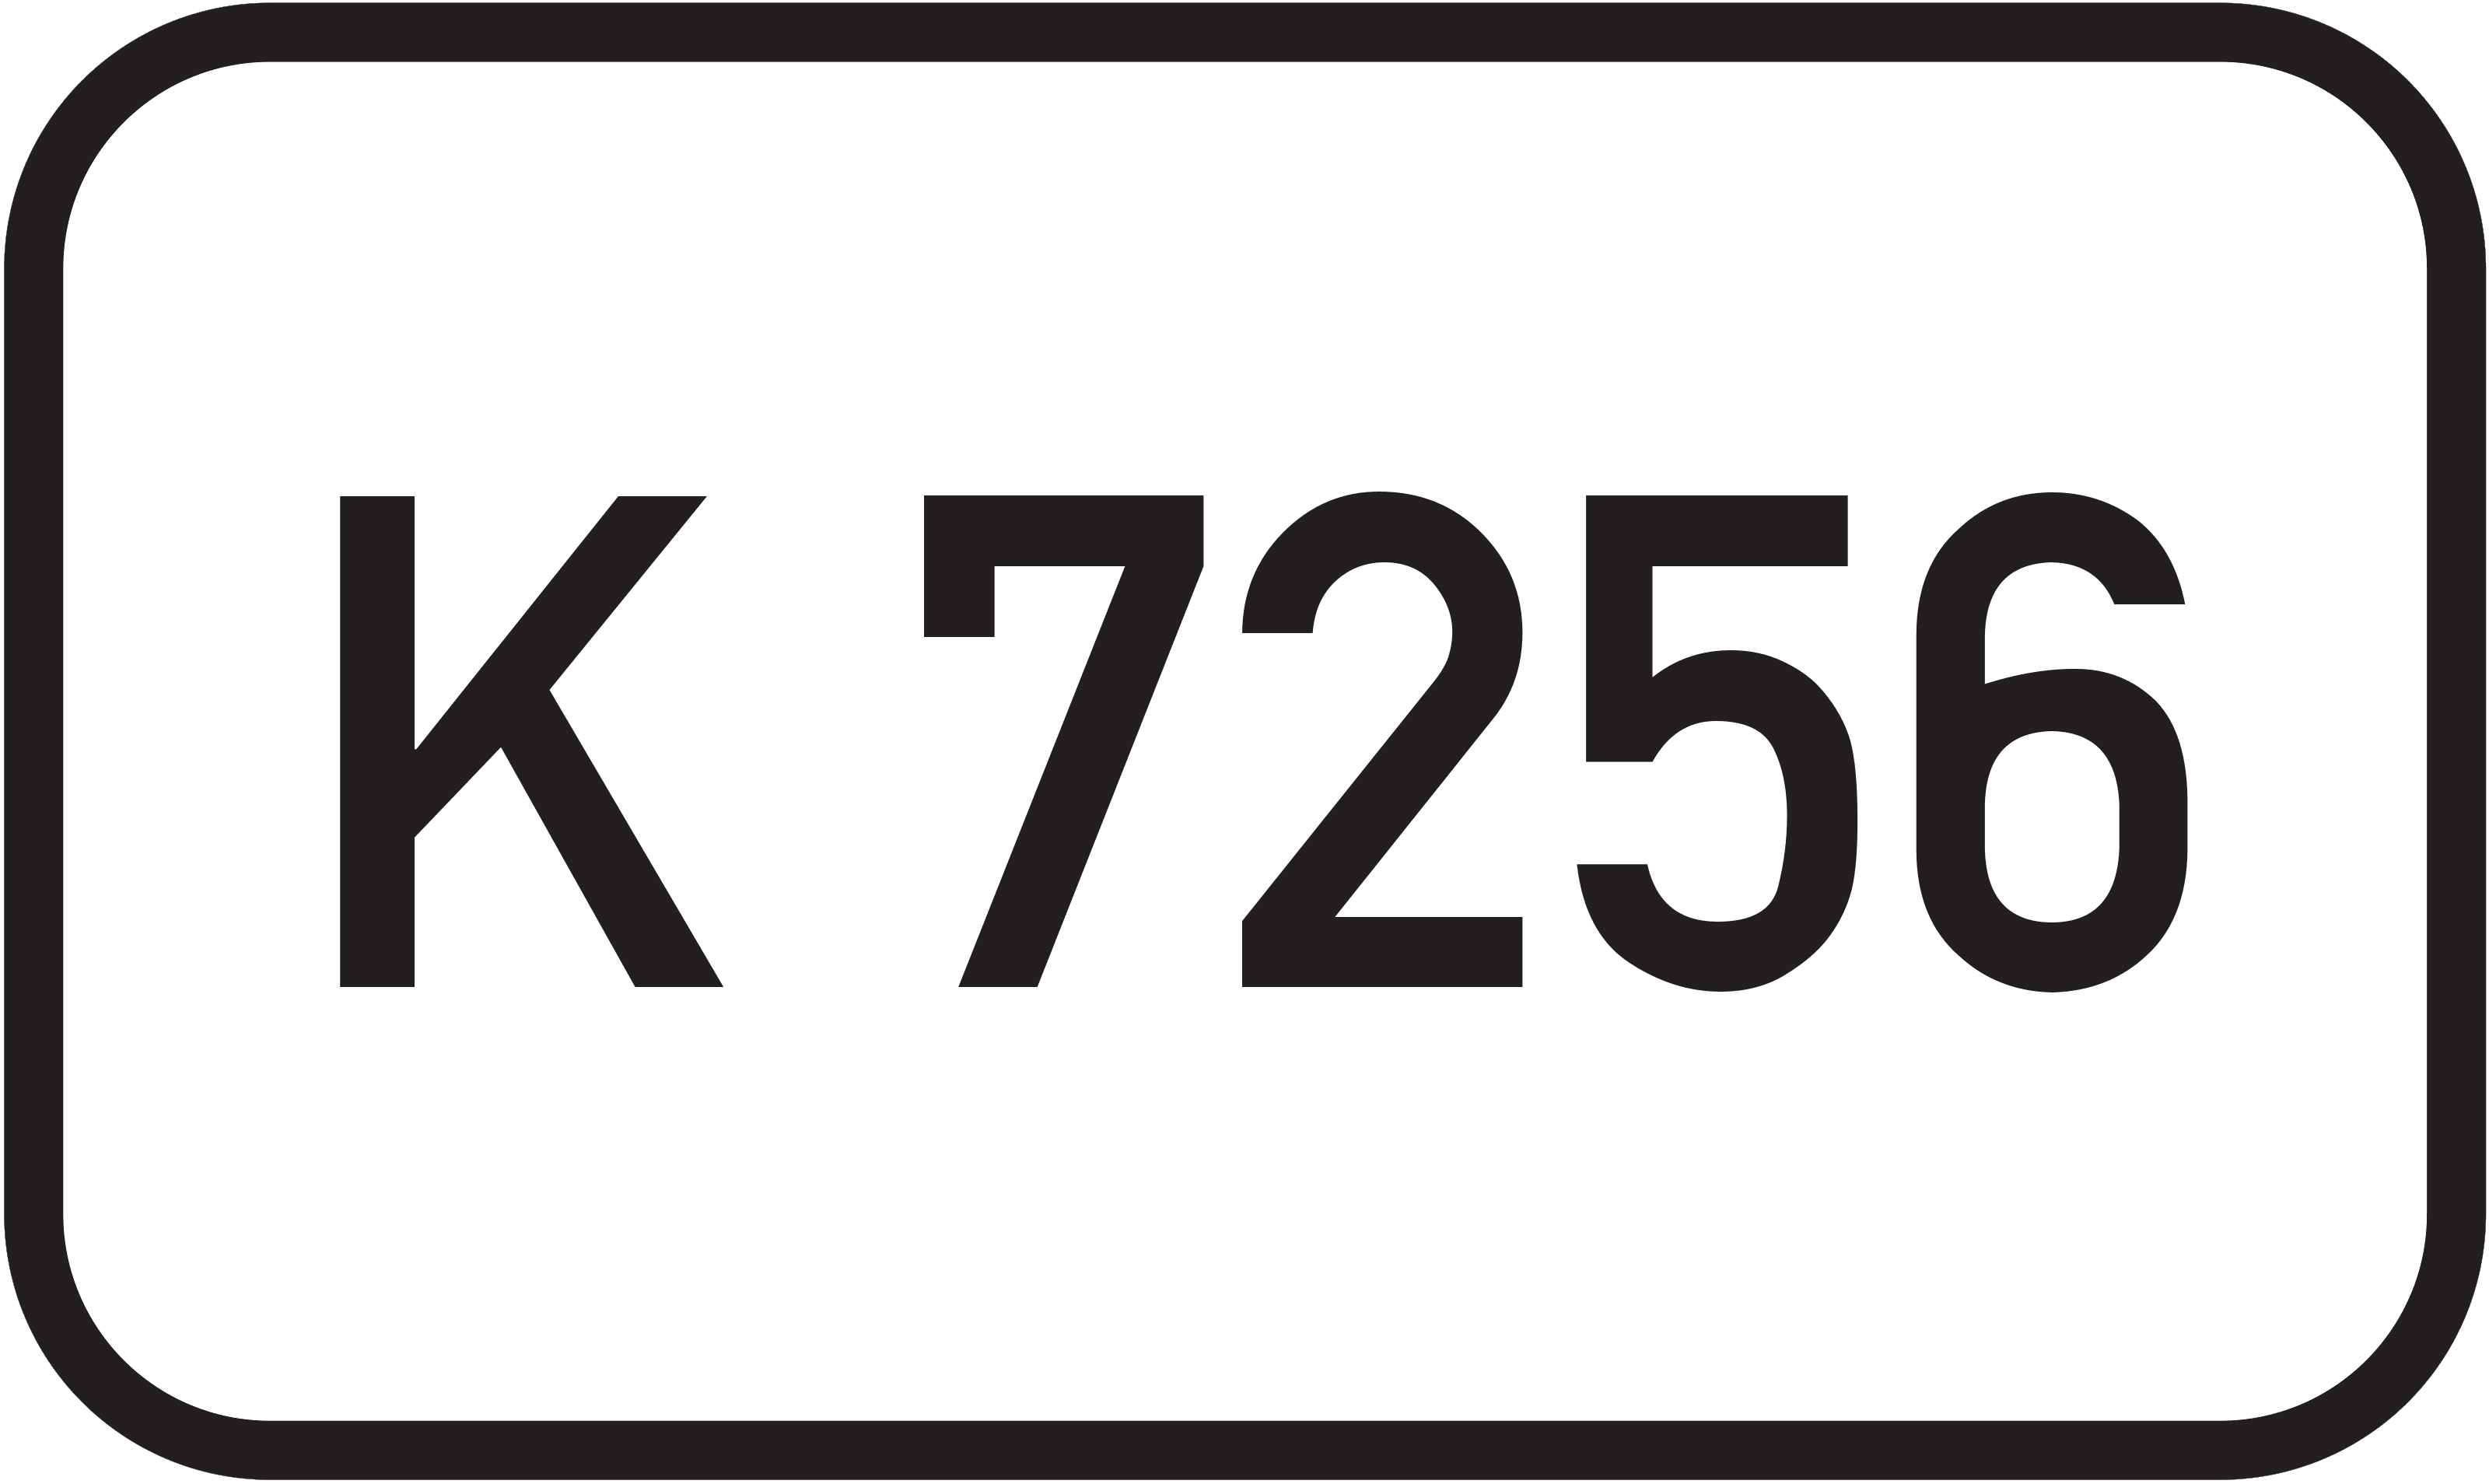 Kreisstraße K 7256